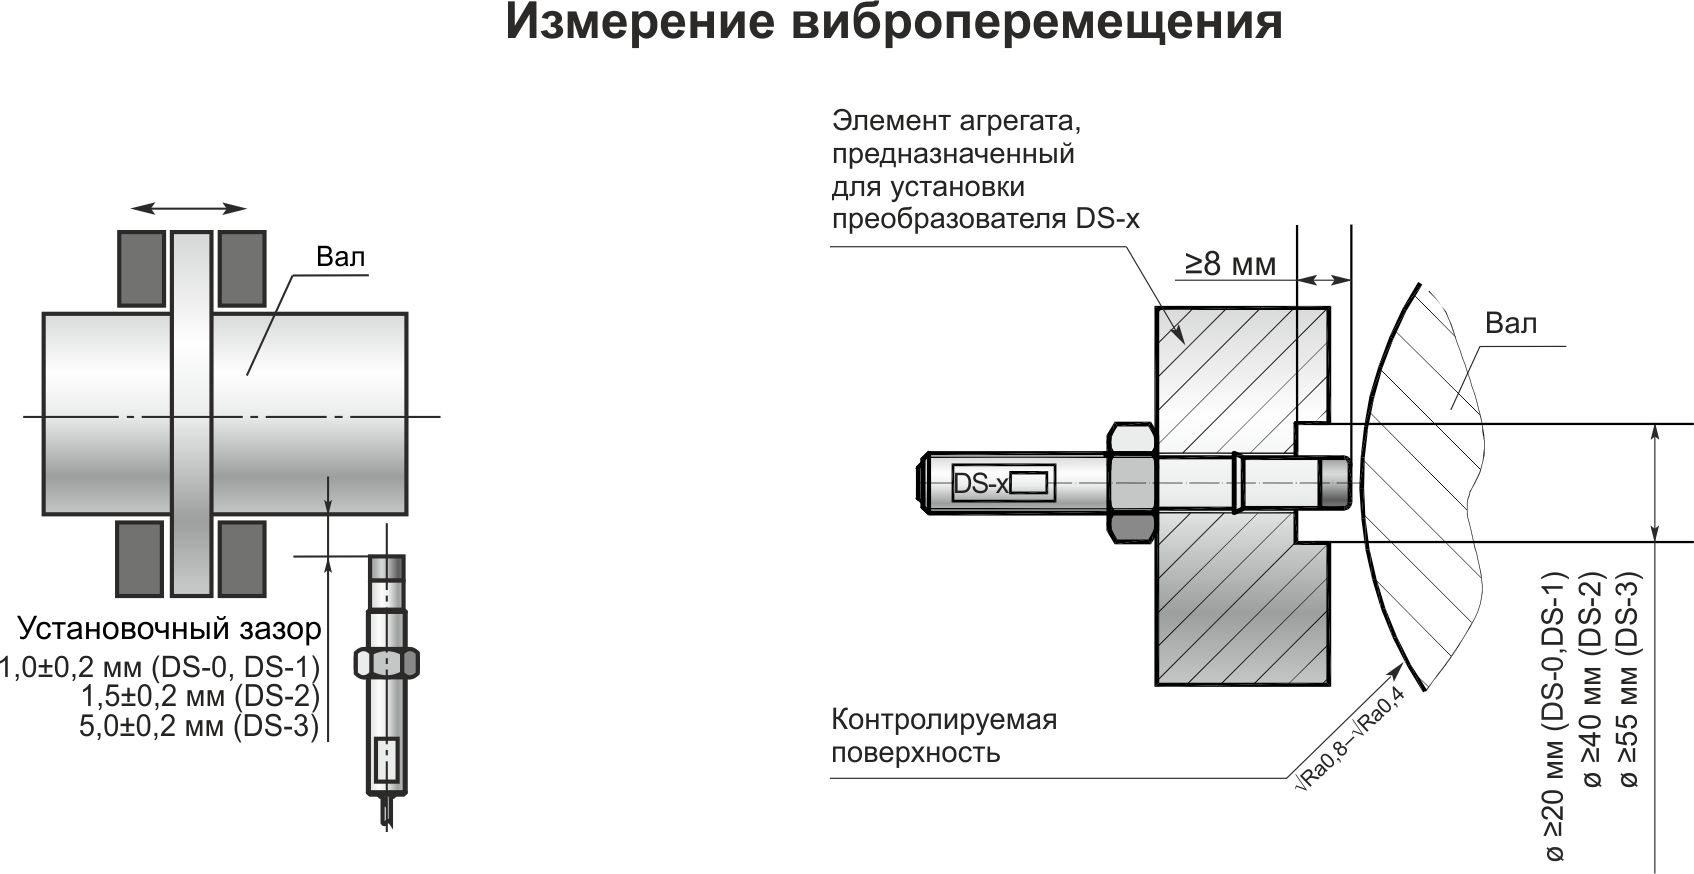 Типовая схема установки виброизмерительного канала ИКВ-1-3-1